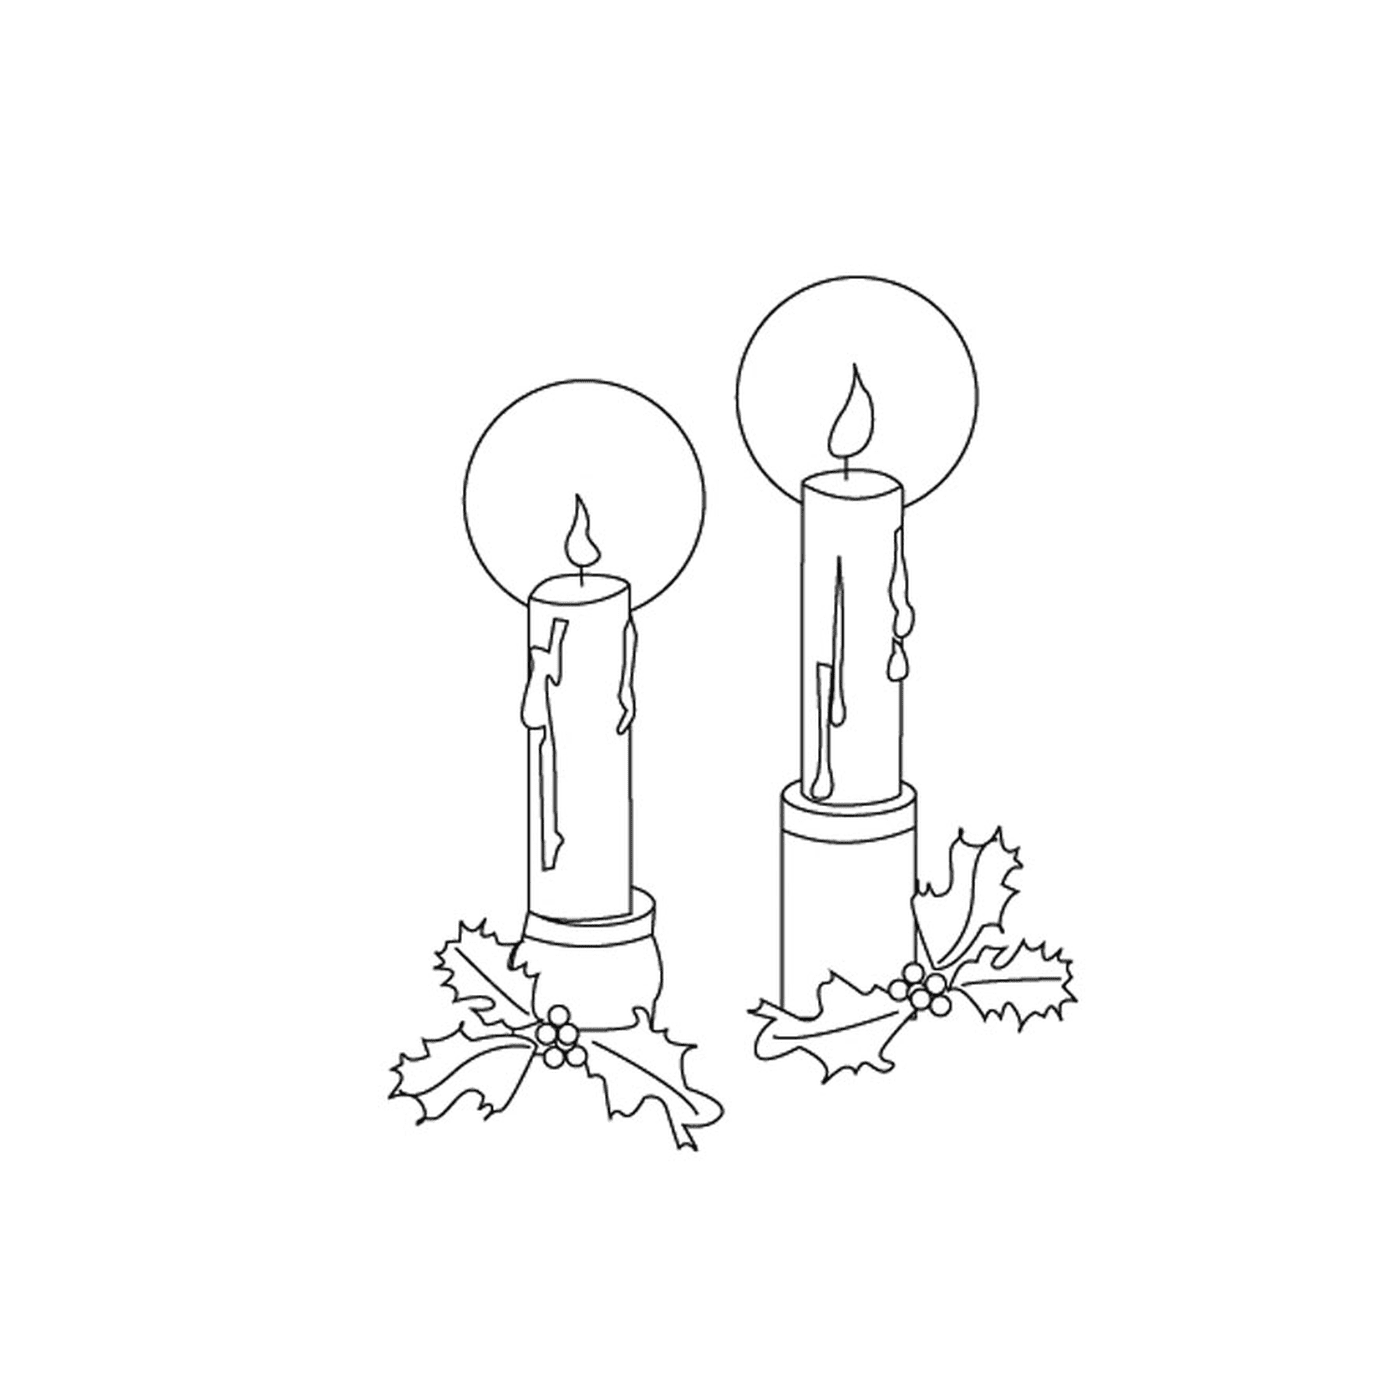  Duas velas acesas lado a lado no azevinho 